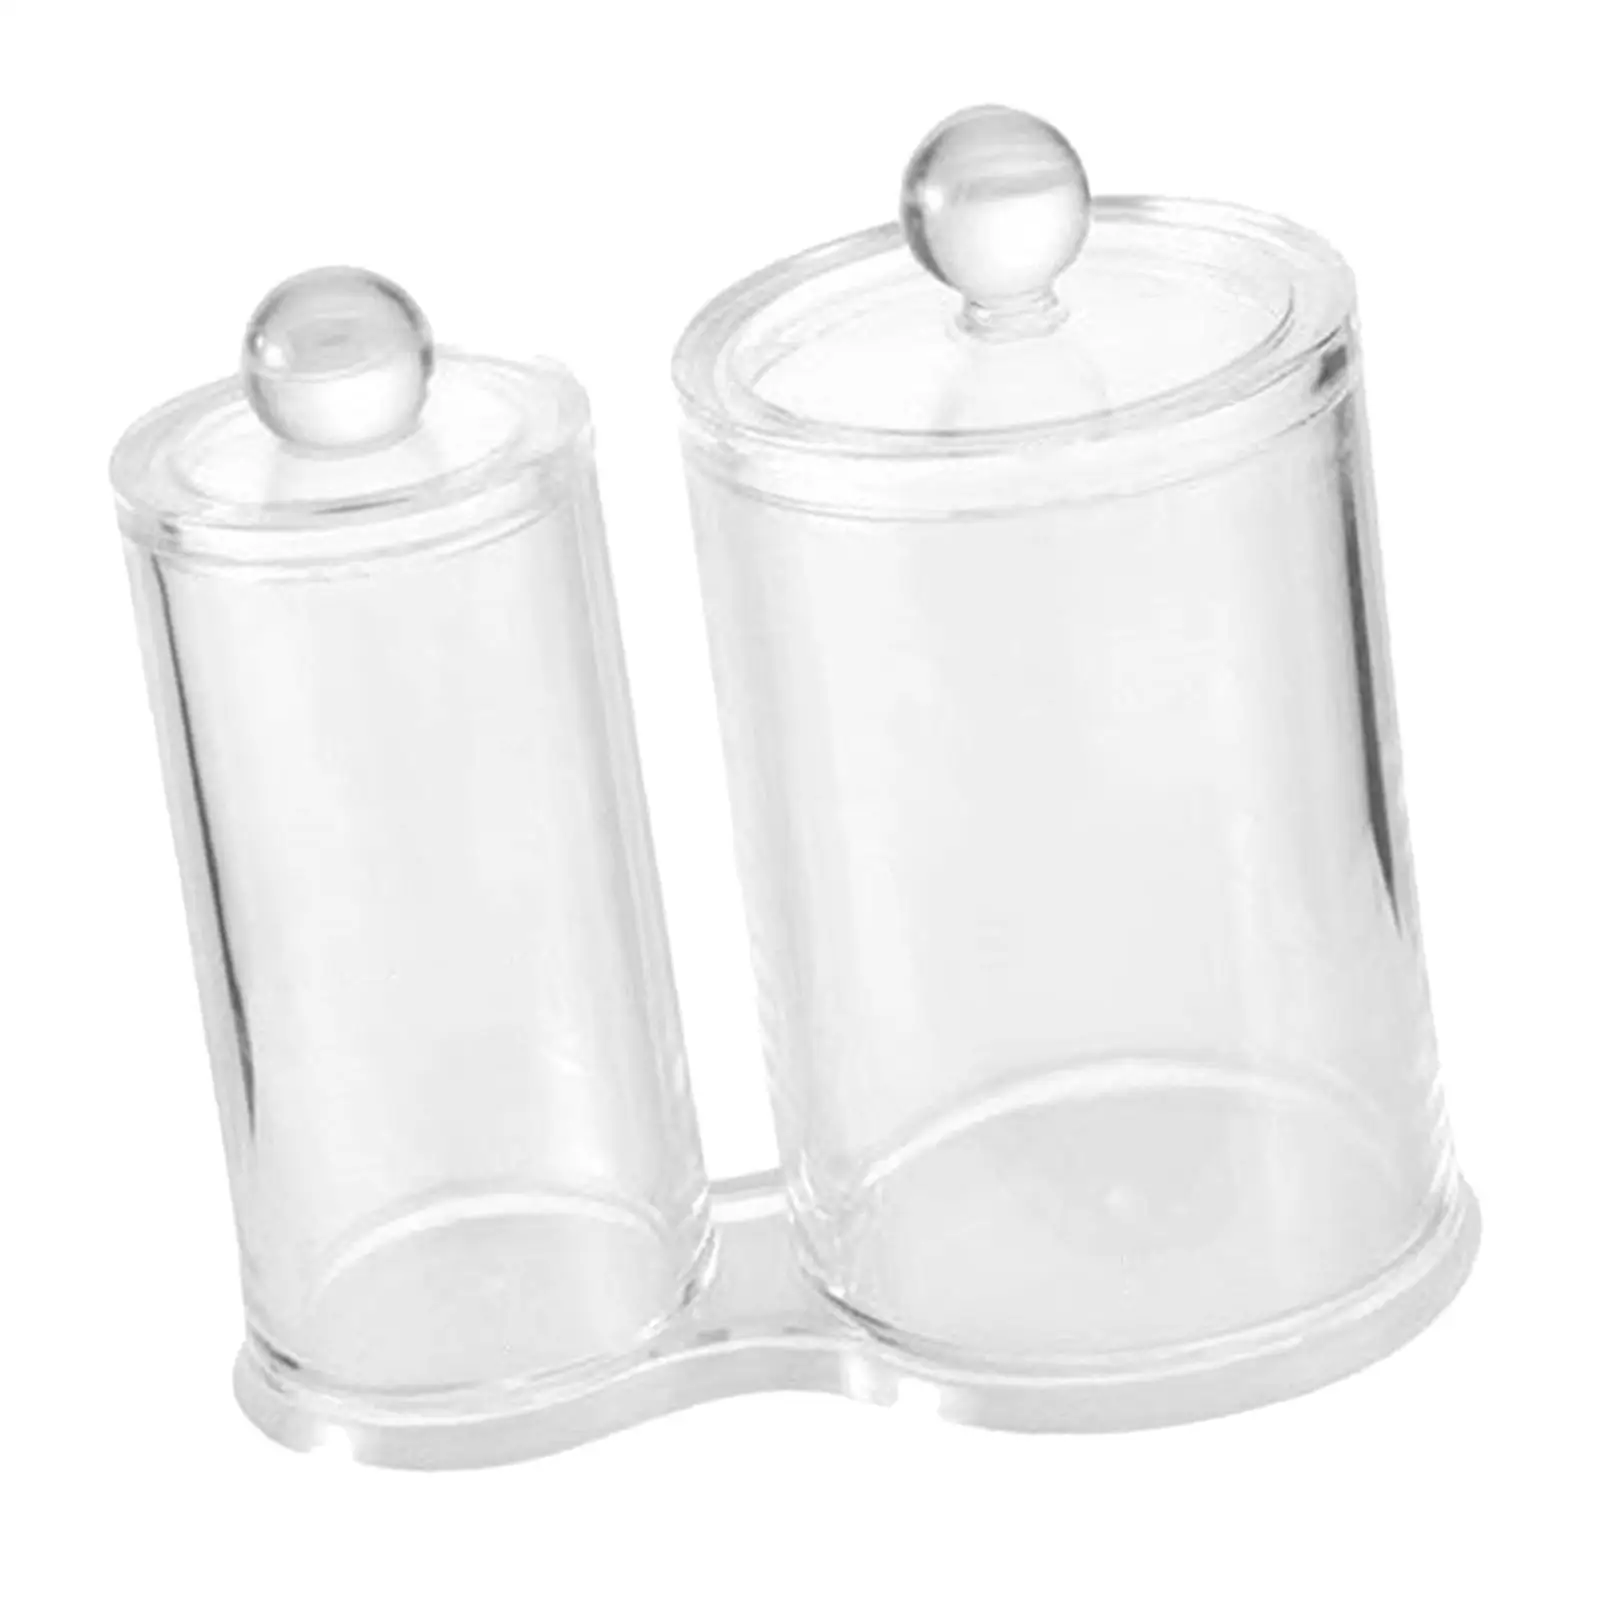 Cotton Swab Ball Pad Holder  Holder Dispenser Vanity Organizer Storage Storage Container for  Living Room Kitchen Bathroom